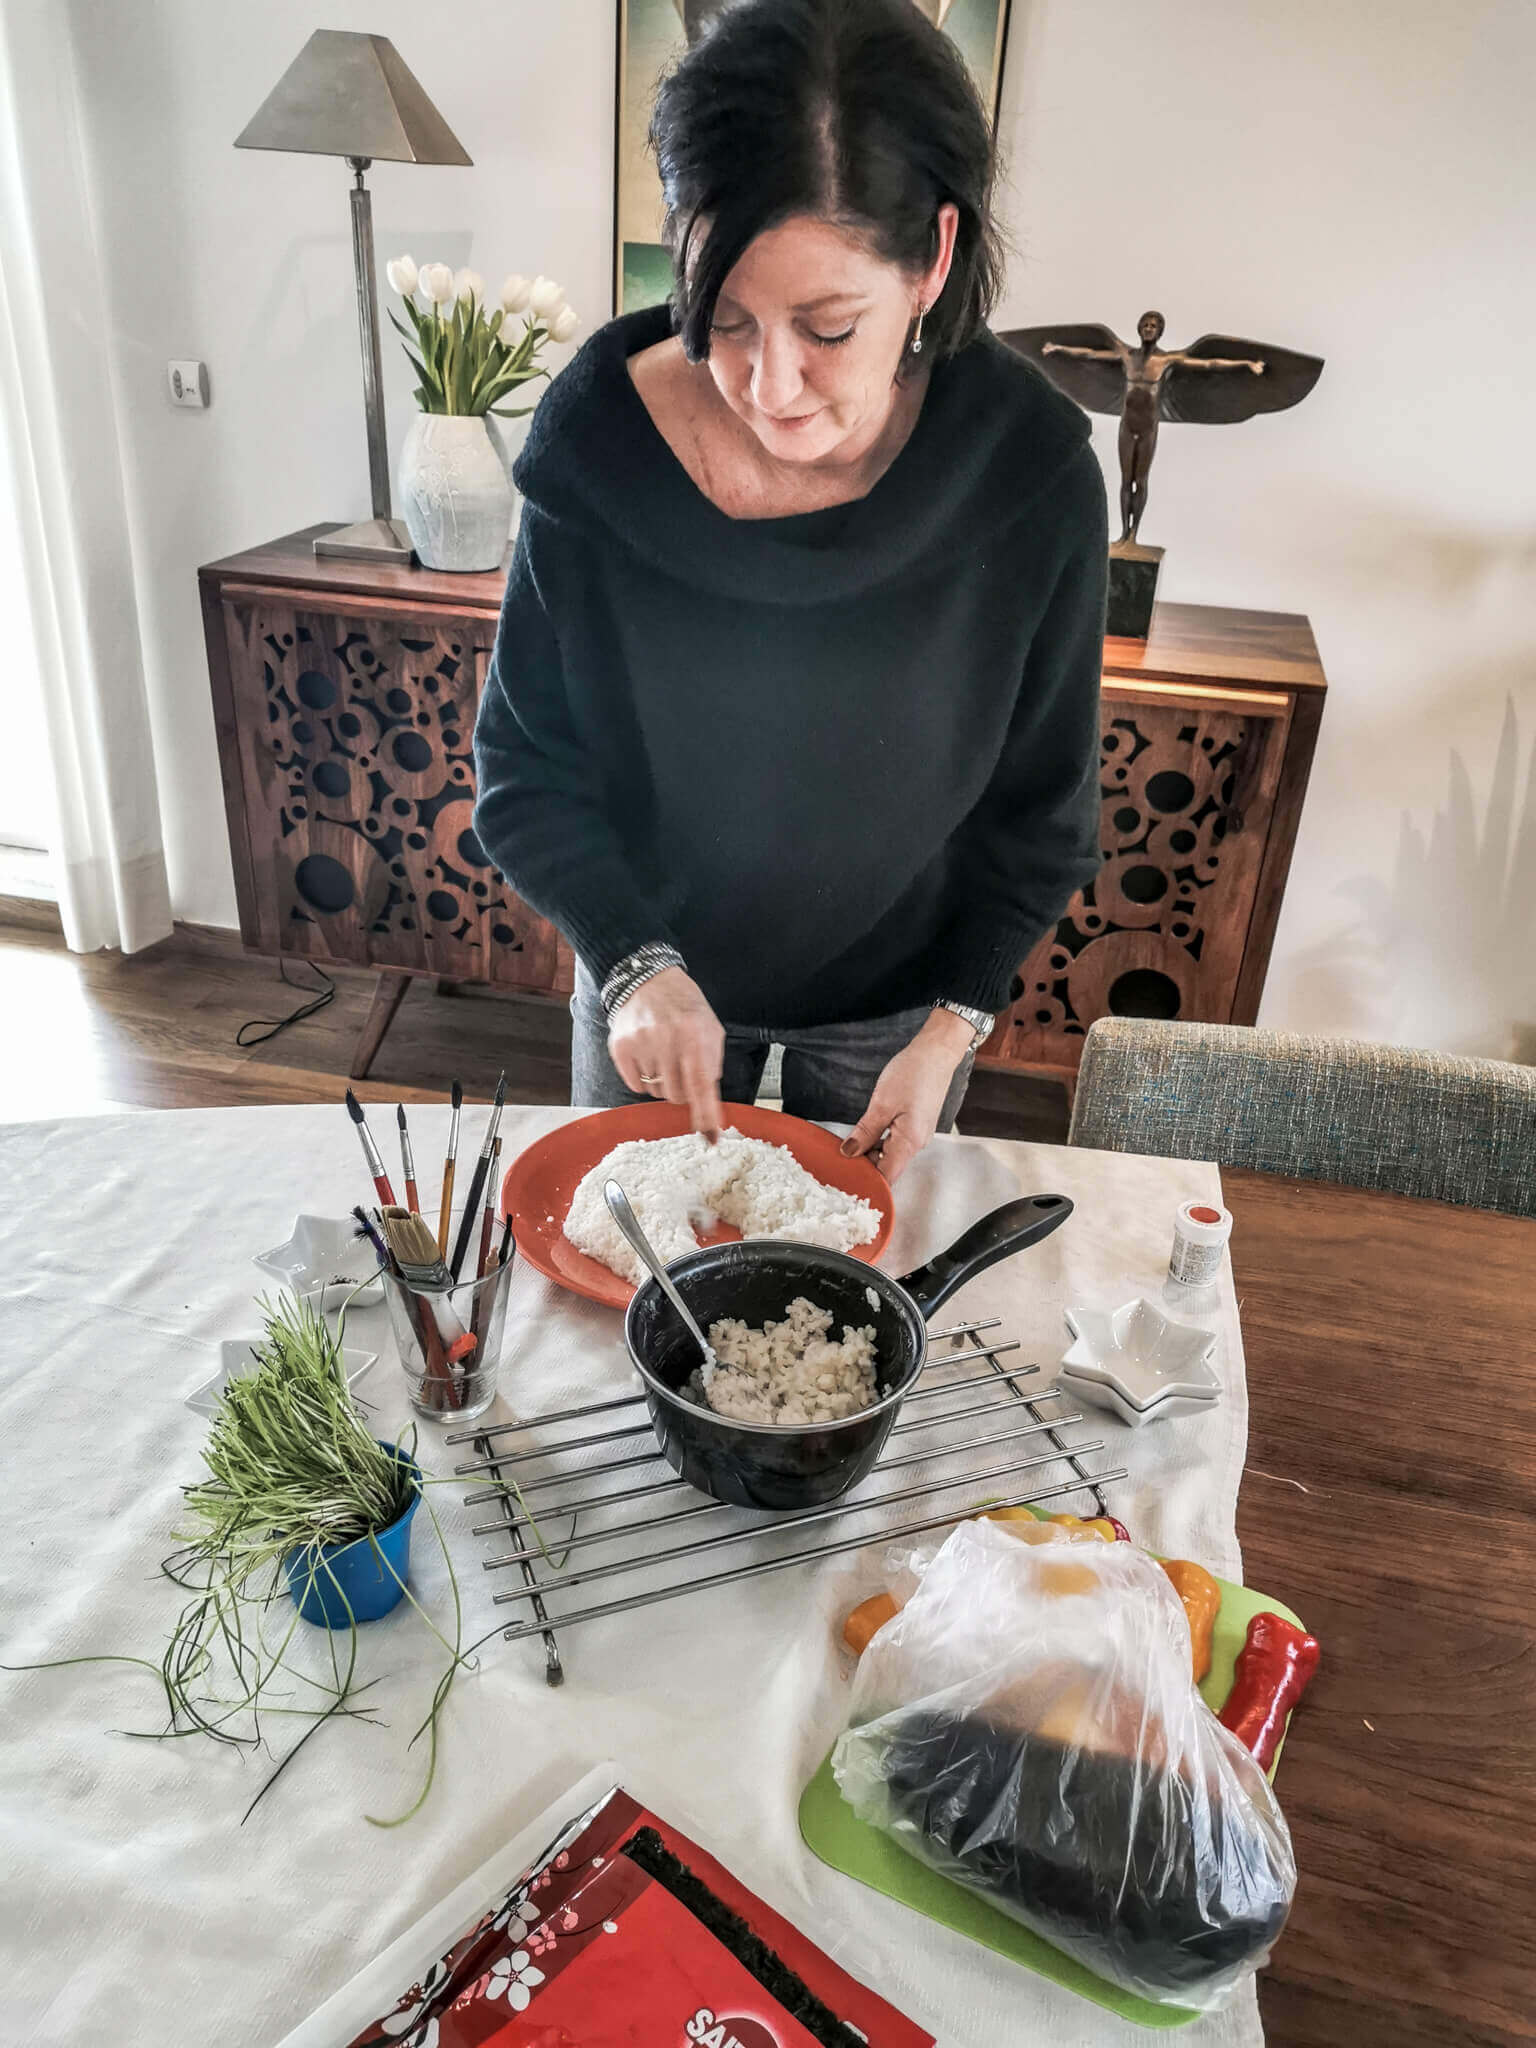 Jolanda Stokkermans beim Kreieren von Food Art 